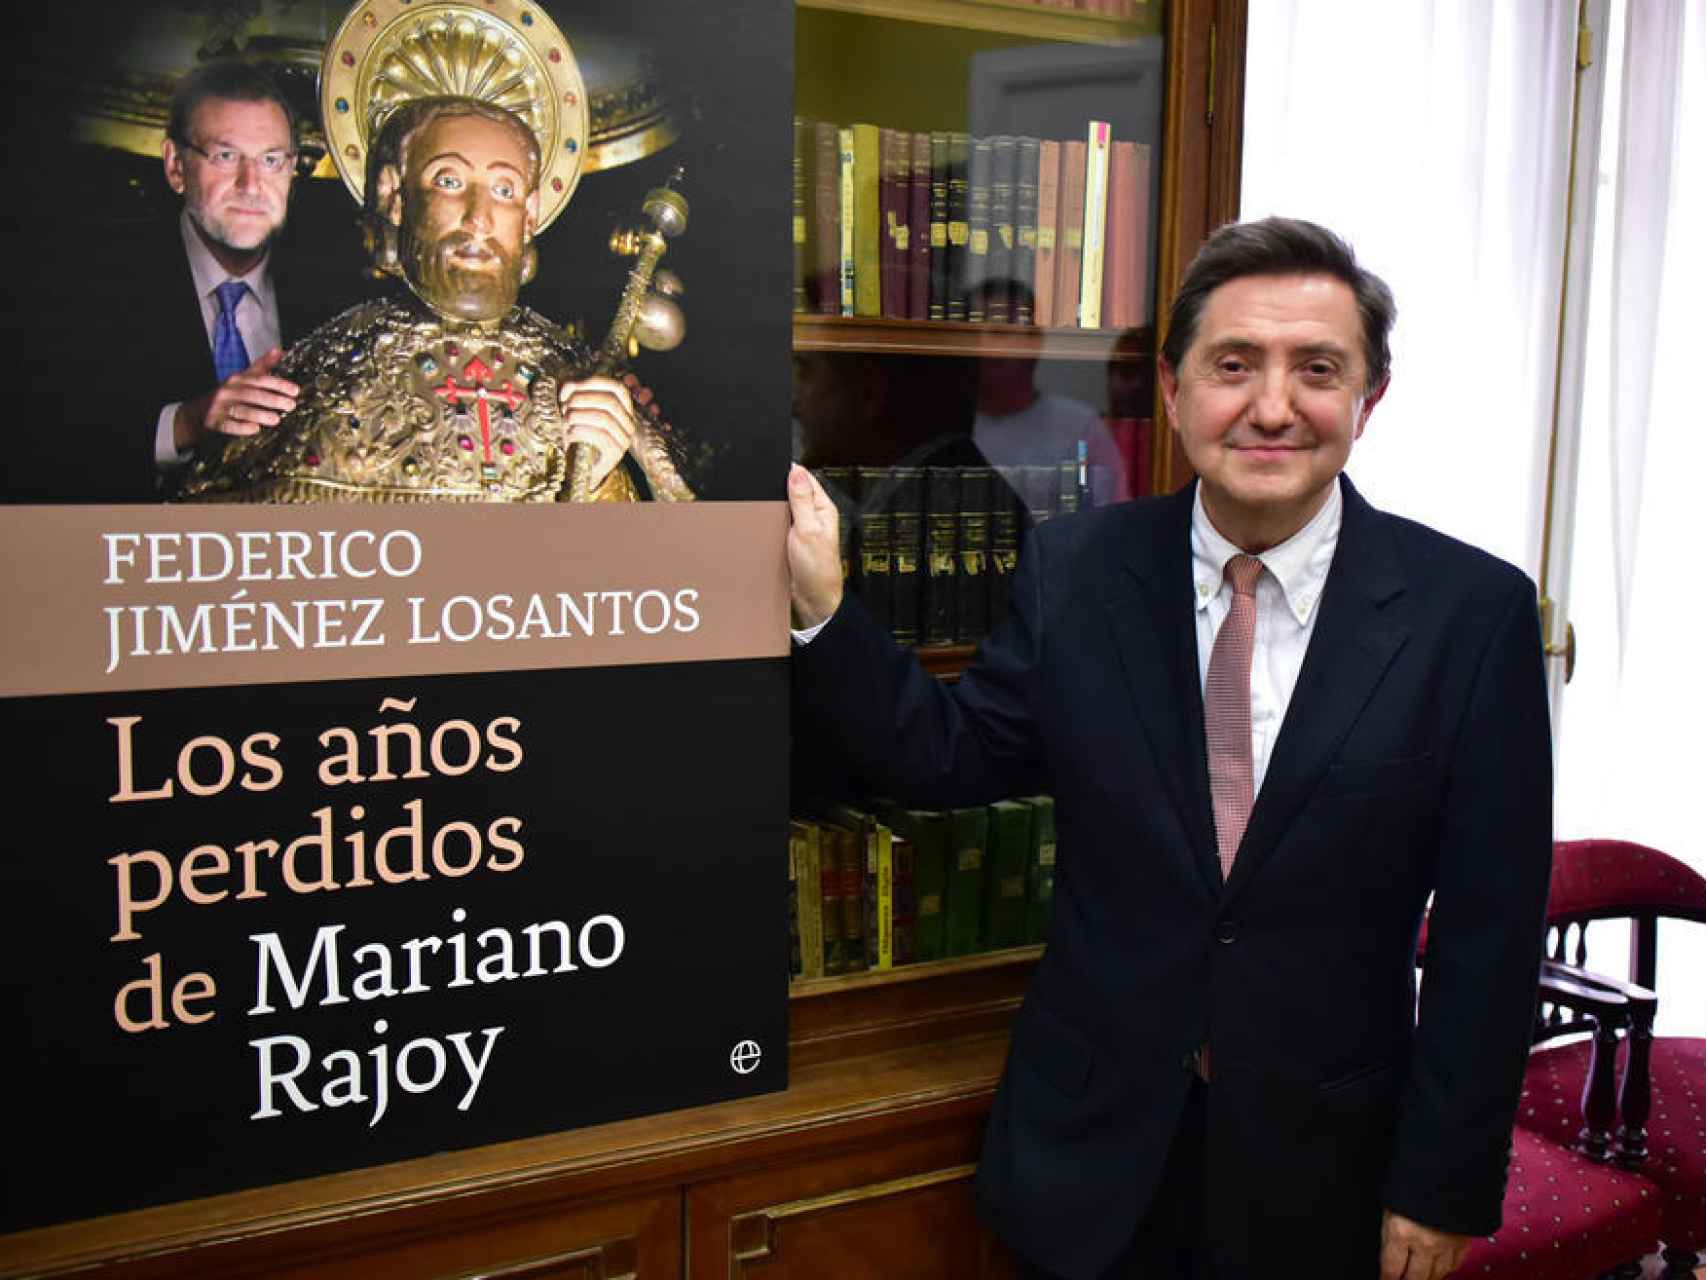 Los años perdidos de Rajoy, de Federico Jiménez Losantos/ Libertad Digital